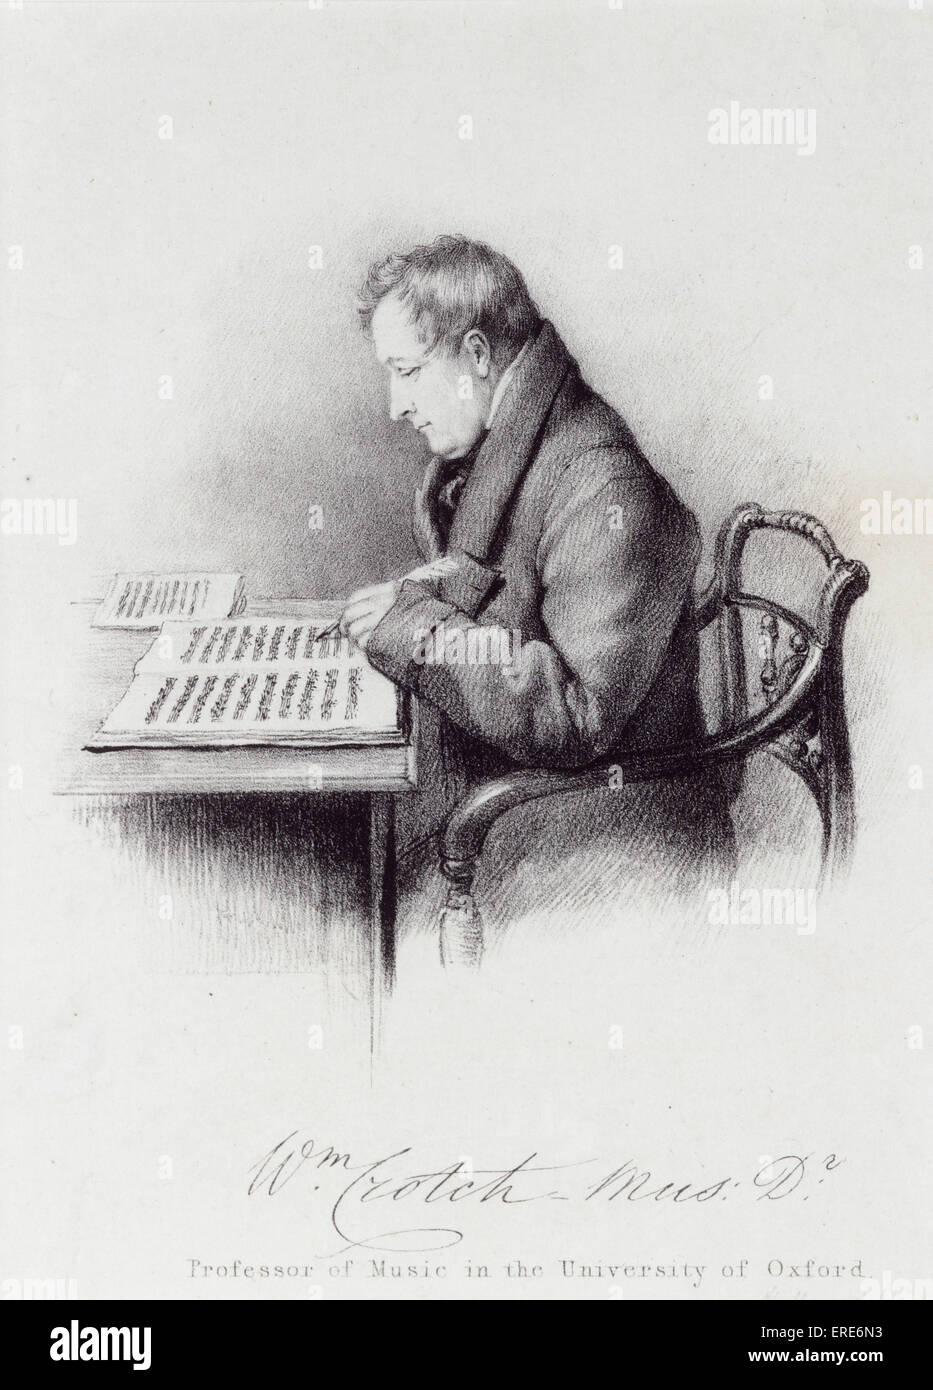 William Crotch Mus D, Professor of Music der University of Oxford, sitzen im Stuhl zu komponieren.  Gravur. Englischer Komponist Stockfoto